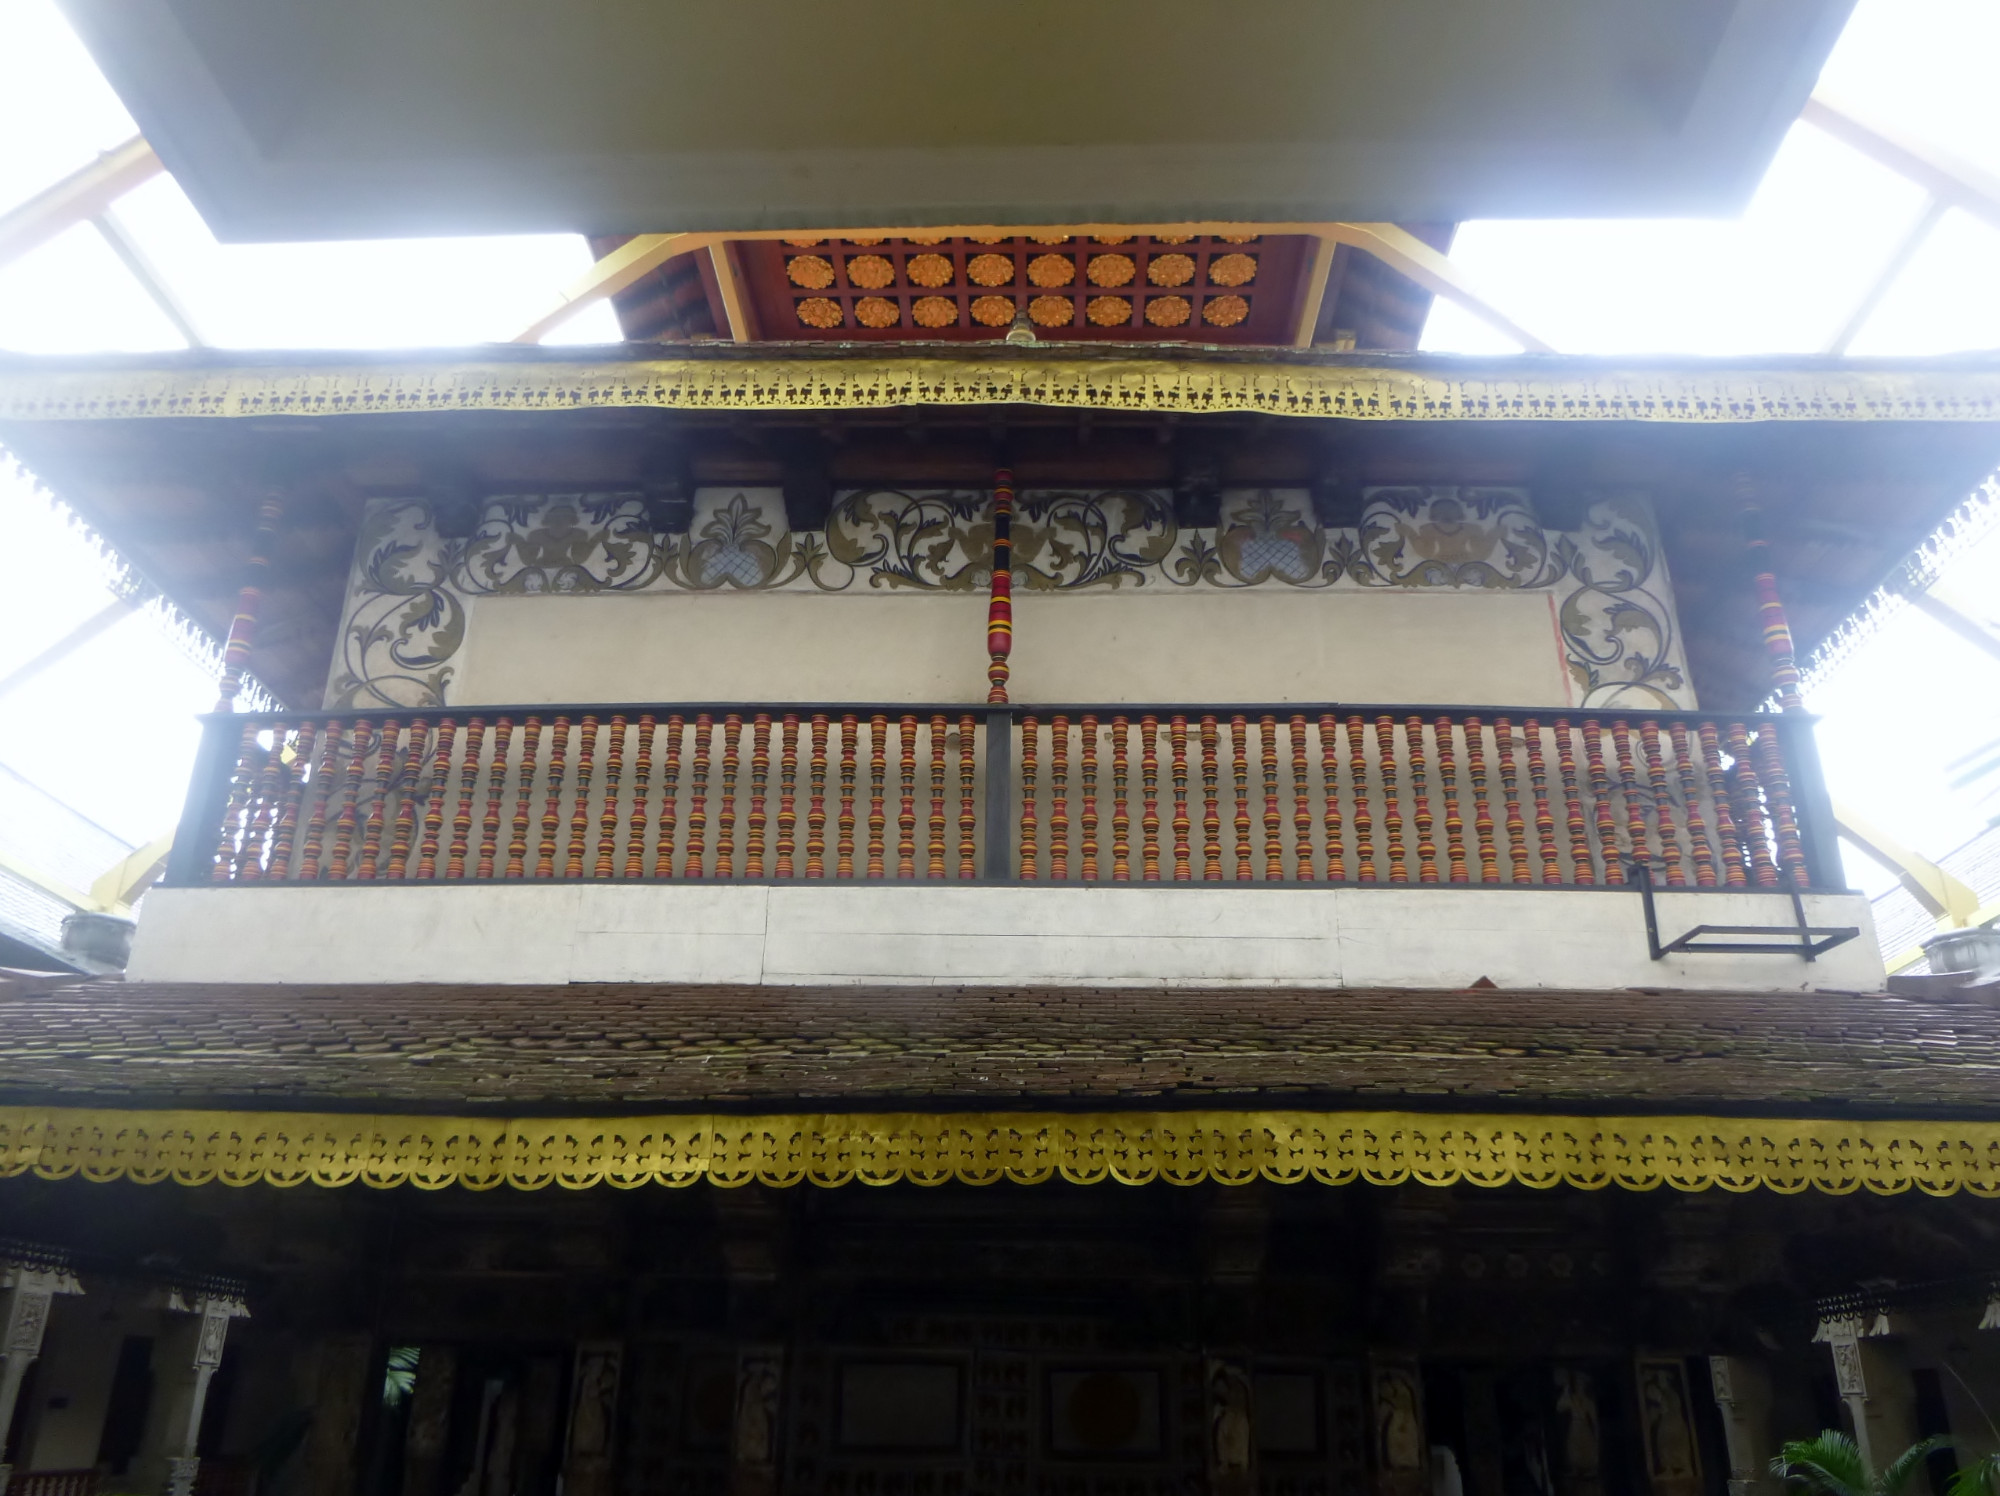 Temple of the Sacred Tooth Relic or Sri Dalada Maligawa